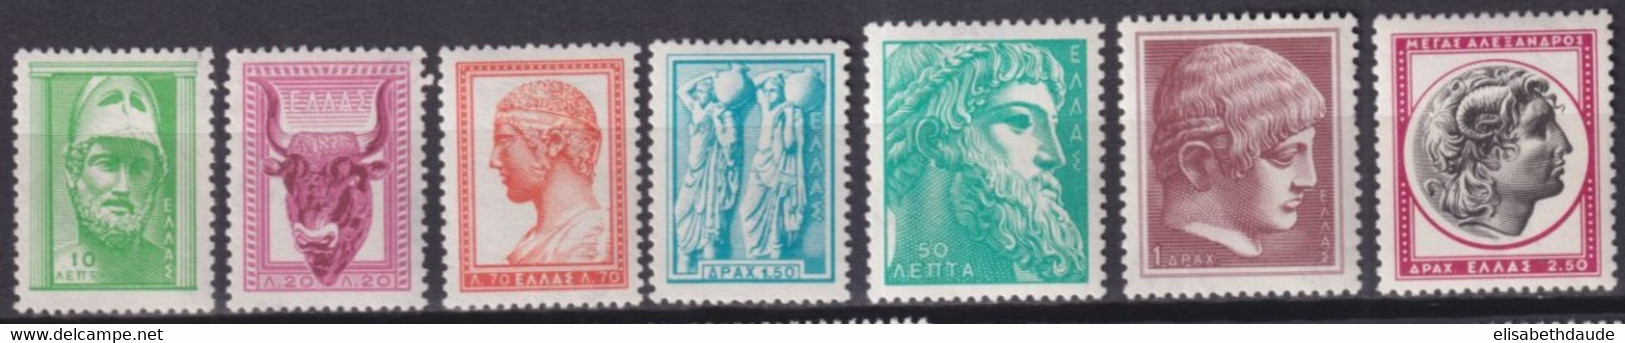 GRECE - 1958 - YVERT N°668/674A ** MNH  - COTE = 45 EUR - Nuevos